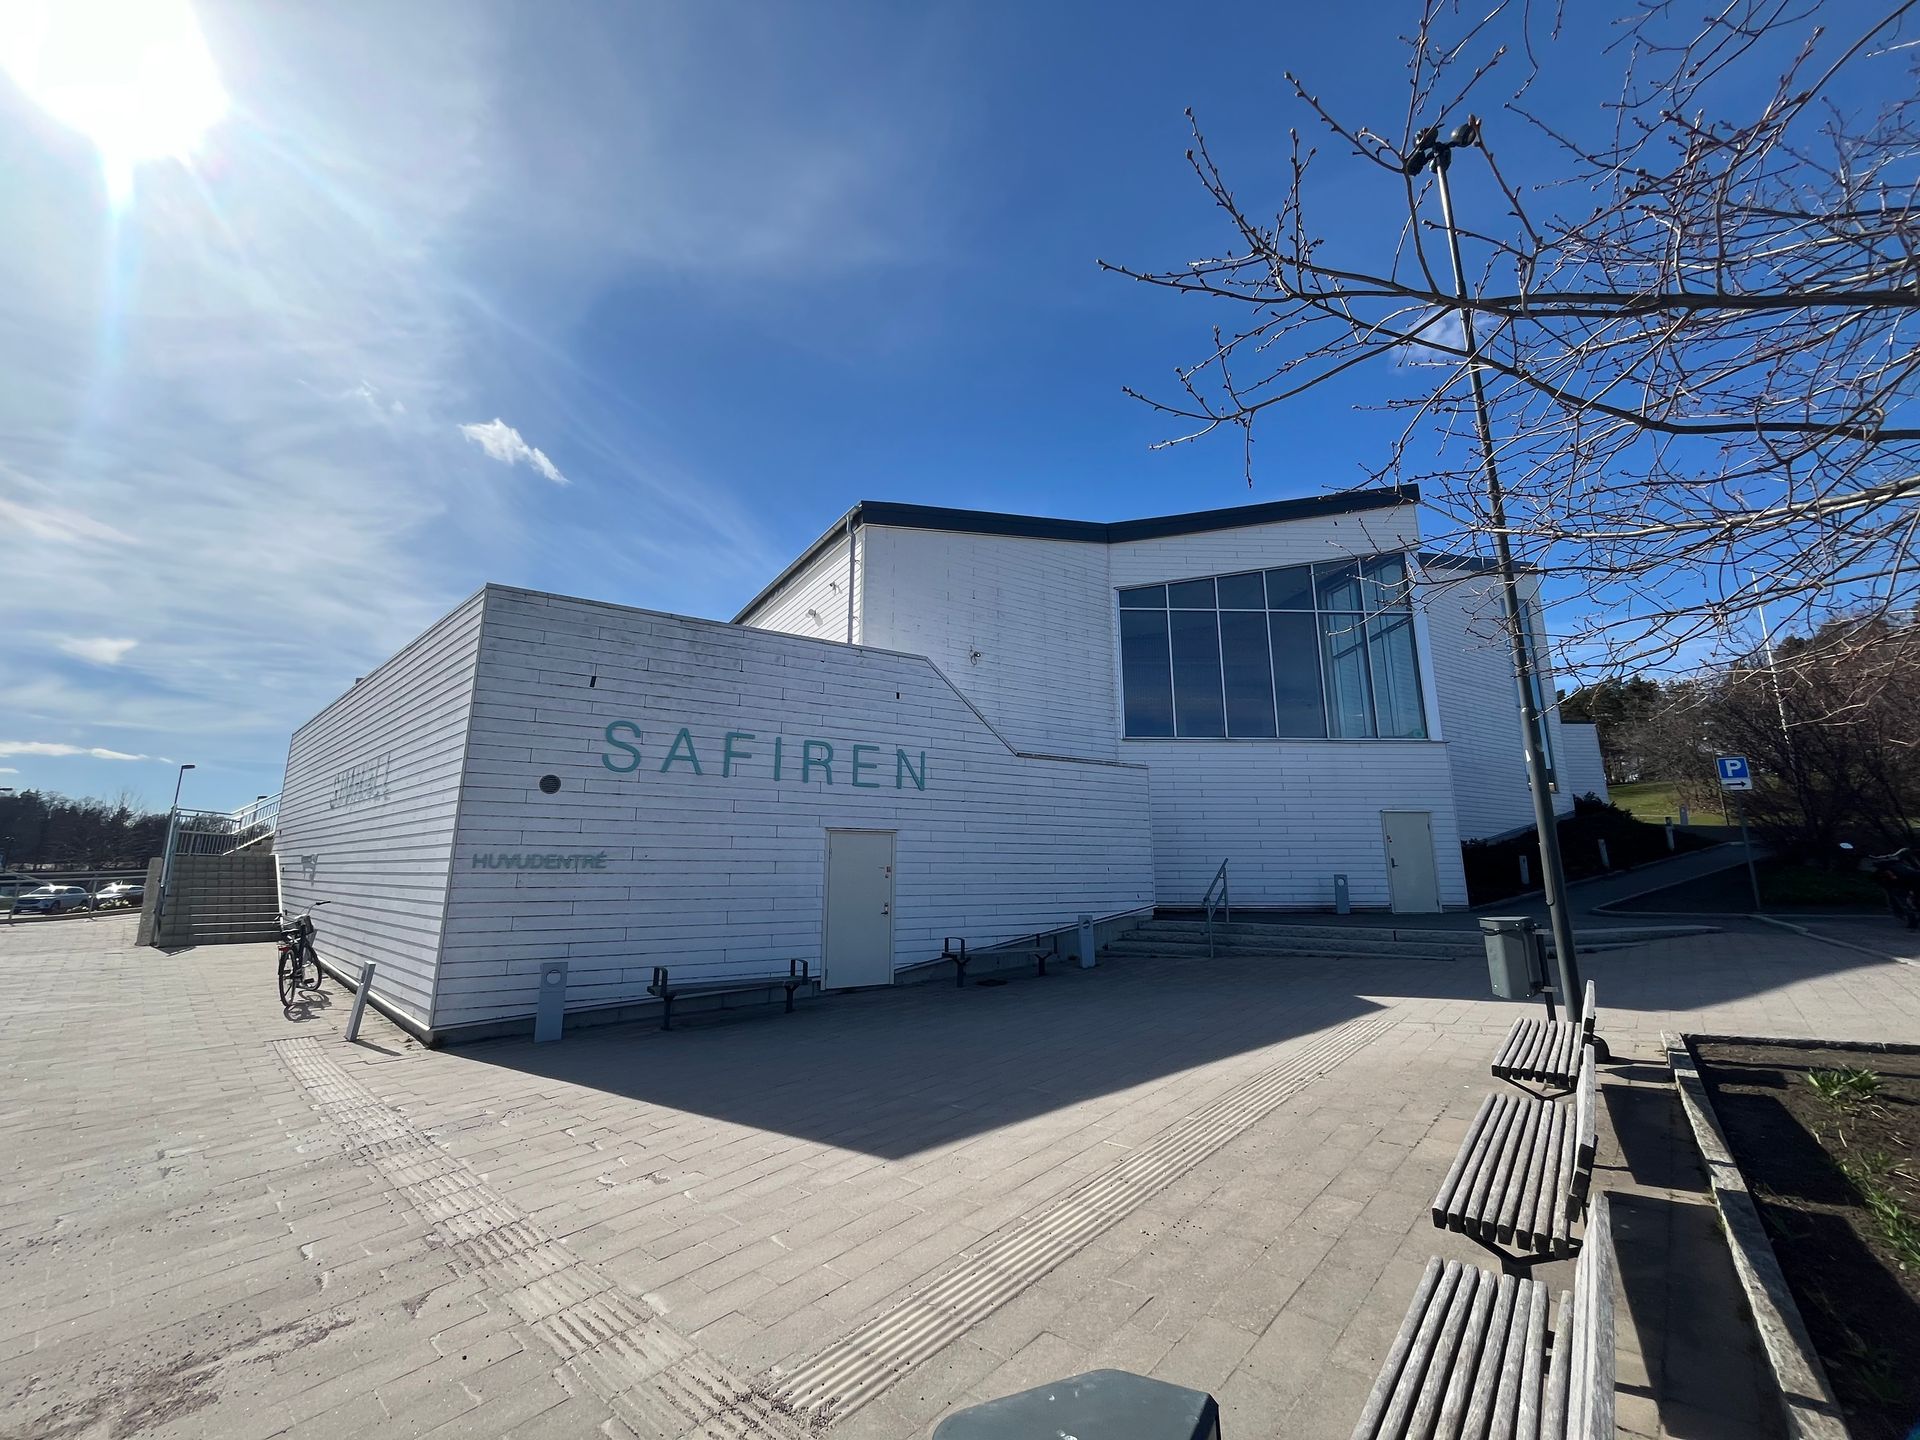 Foto på simhallen Safiren tagen utifrån på byggnaden.